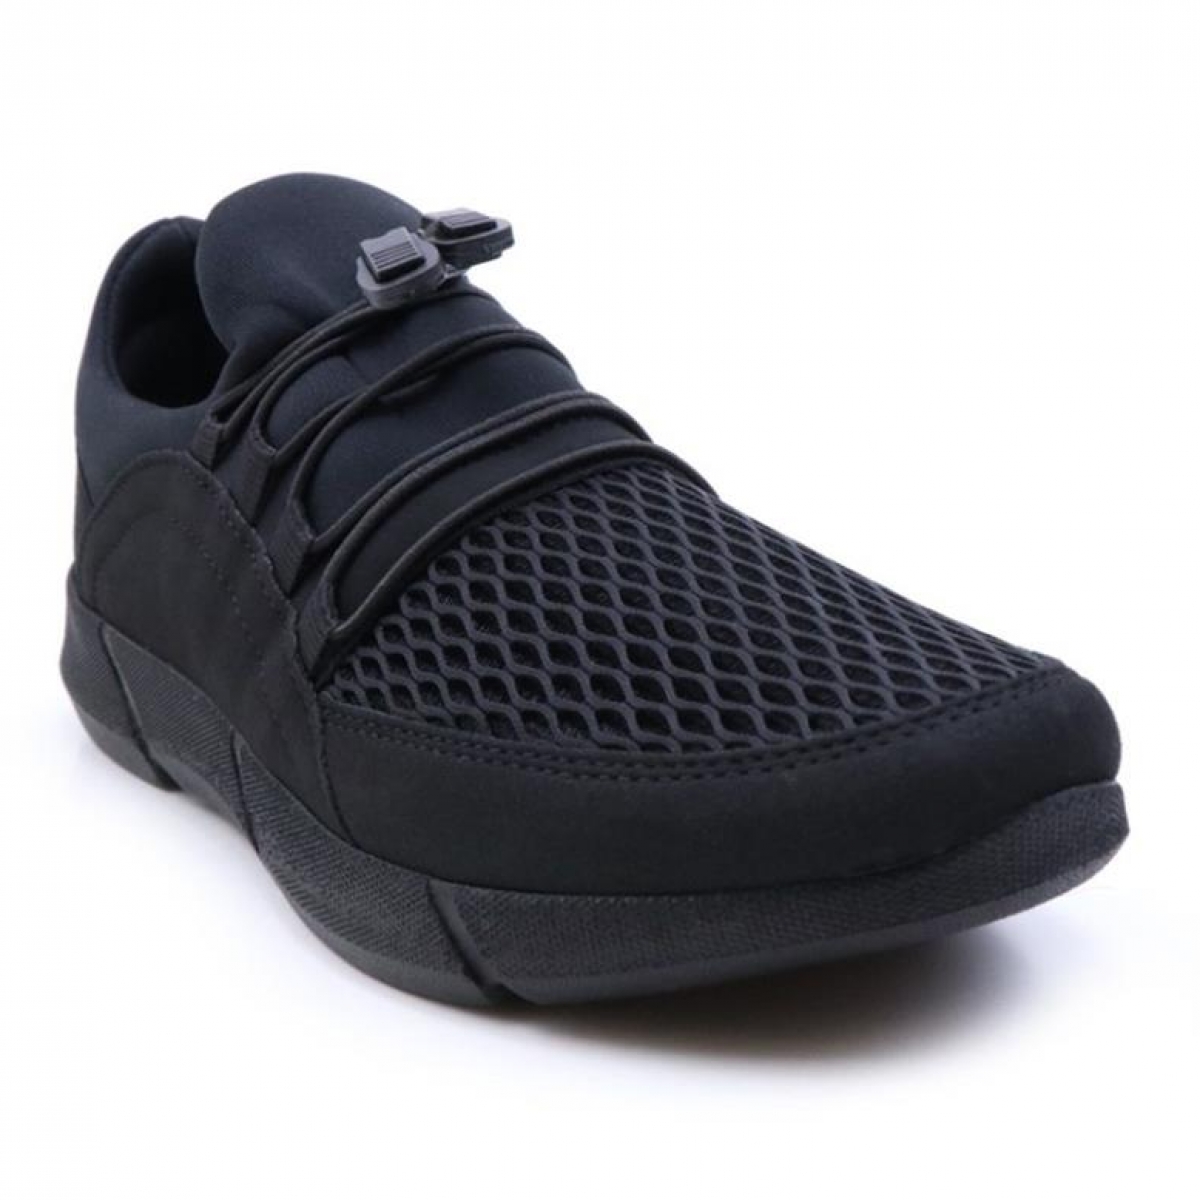 Flo 2015 Erkek Siyah Sneakers Spor Ayakkabı. 2